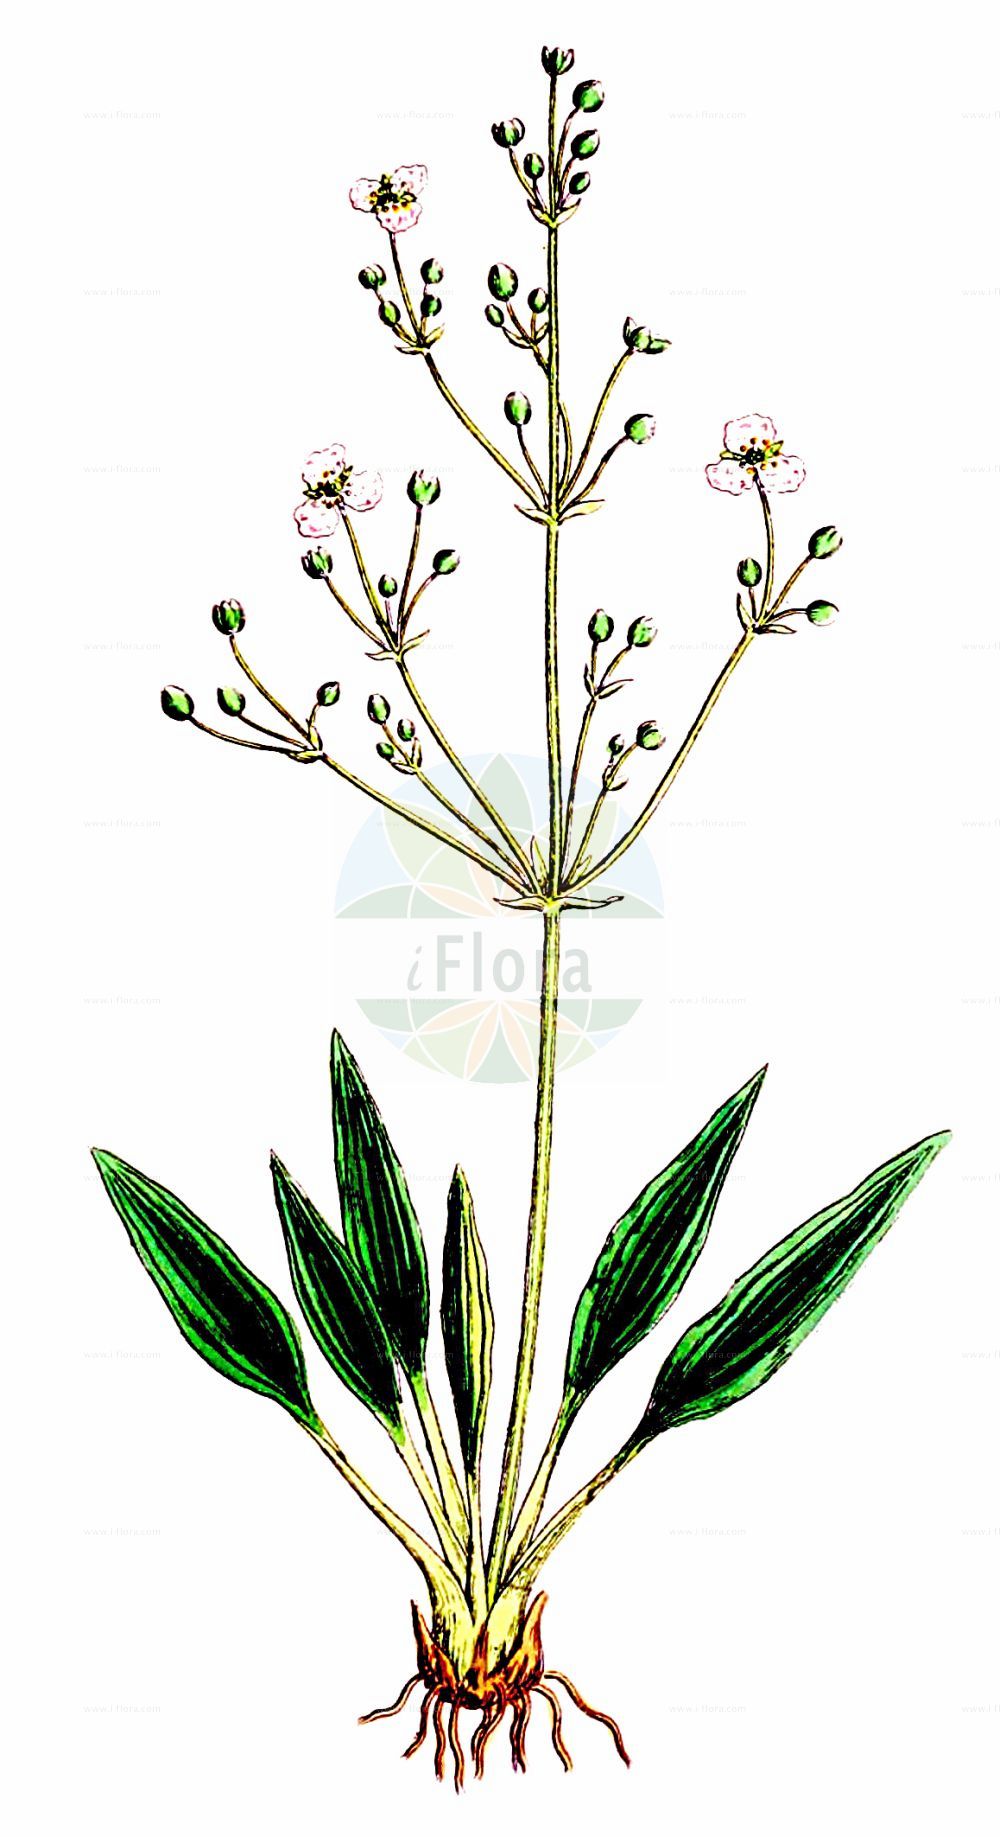 Historische Abbildung von Alisma lanceolatum (Lanzett-Froschlöffel - Narrow-leaved Water-Plantain). Das Bild zeigt Blatt, Bluete, Frucht und Same. ---- Historical Drawing of Alisma lanceolatum (Lanzett-Froschlöffel - Narrow-leaved Water-Plantain). The image is showing leaf, flower, fruit and seed.(Alisma lanceolatum,Lanzett-Froschlöffel,Narrow-leaved Water-Plantain,Alisma lanceolatum,Alisma stenophyllum,Lanzett-Froschloeffel,Narrow-leaved Water-Plantain,Lance-leaf Water Plantain,Lance-leaved Water Plantain,Alisma,Froschlöffel,Water Plantain,Alismataceae,Froschlöffelgewächse,Water Plantain family,Blatt,Bluete,Frucht,Same,leaf,flower,fruit,seed,Sowerby (1790-1813))